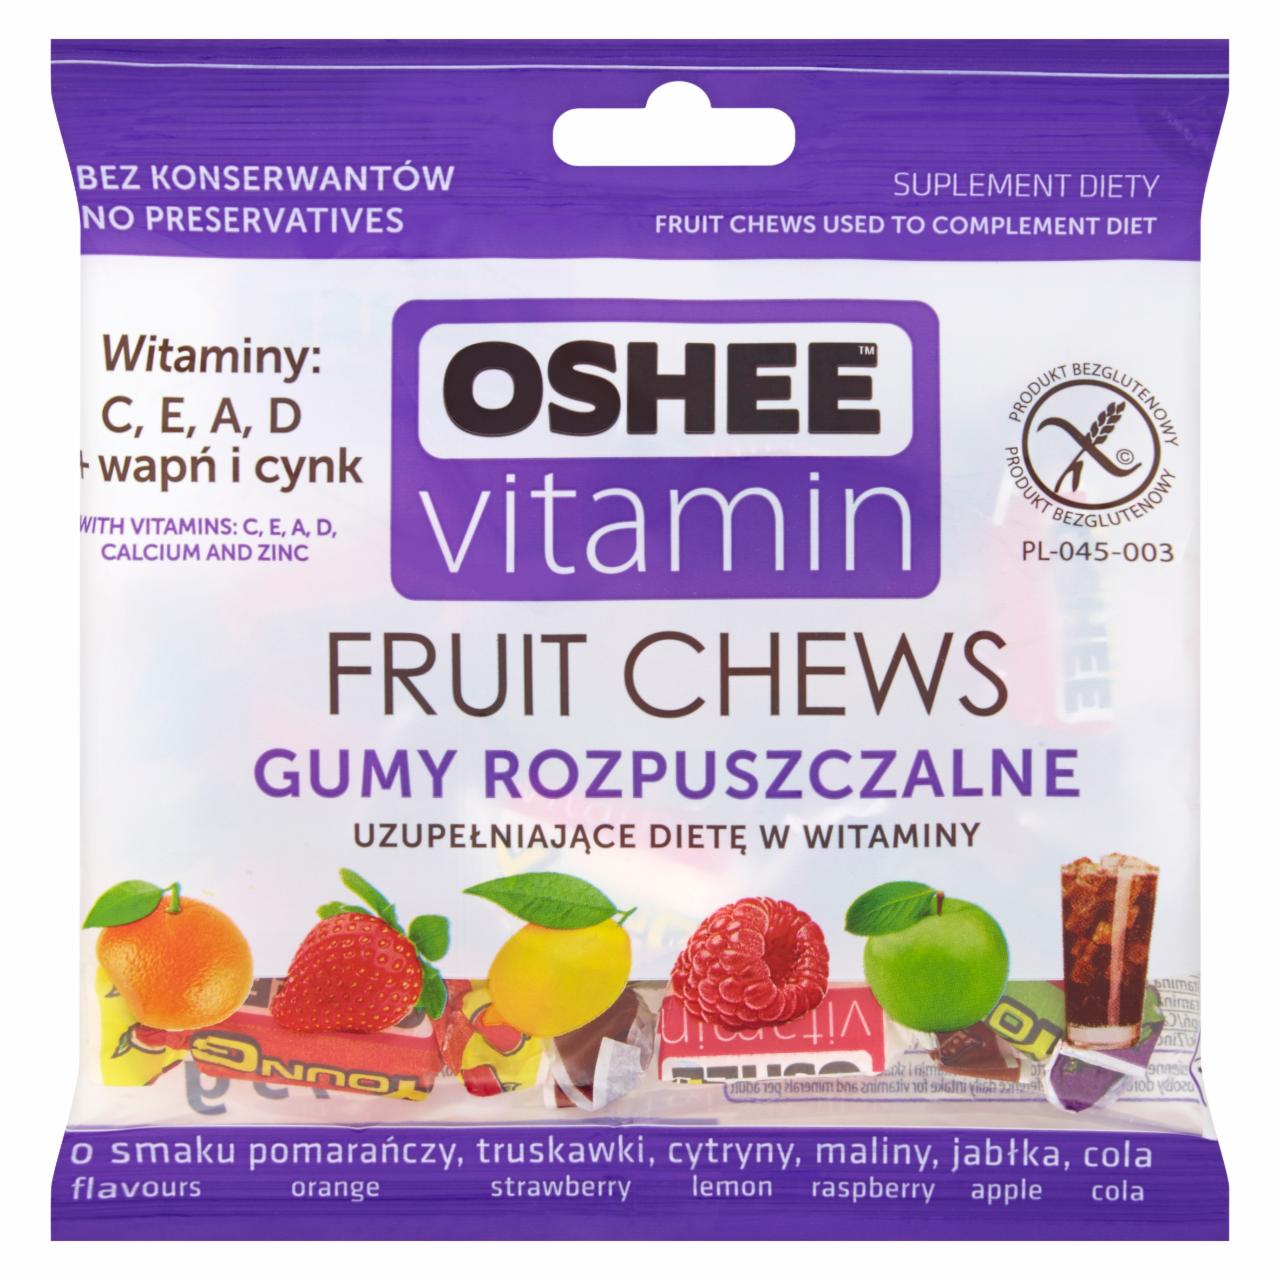 Zdjęcia - Oshee Vitamin Gumy rozpuszczalne o smaku wieloowocowym Suplement diety 75 g